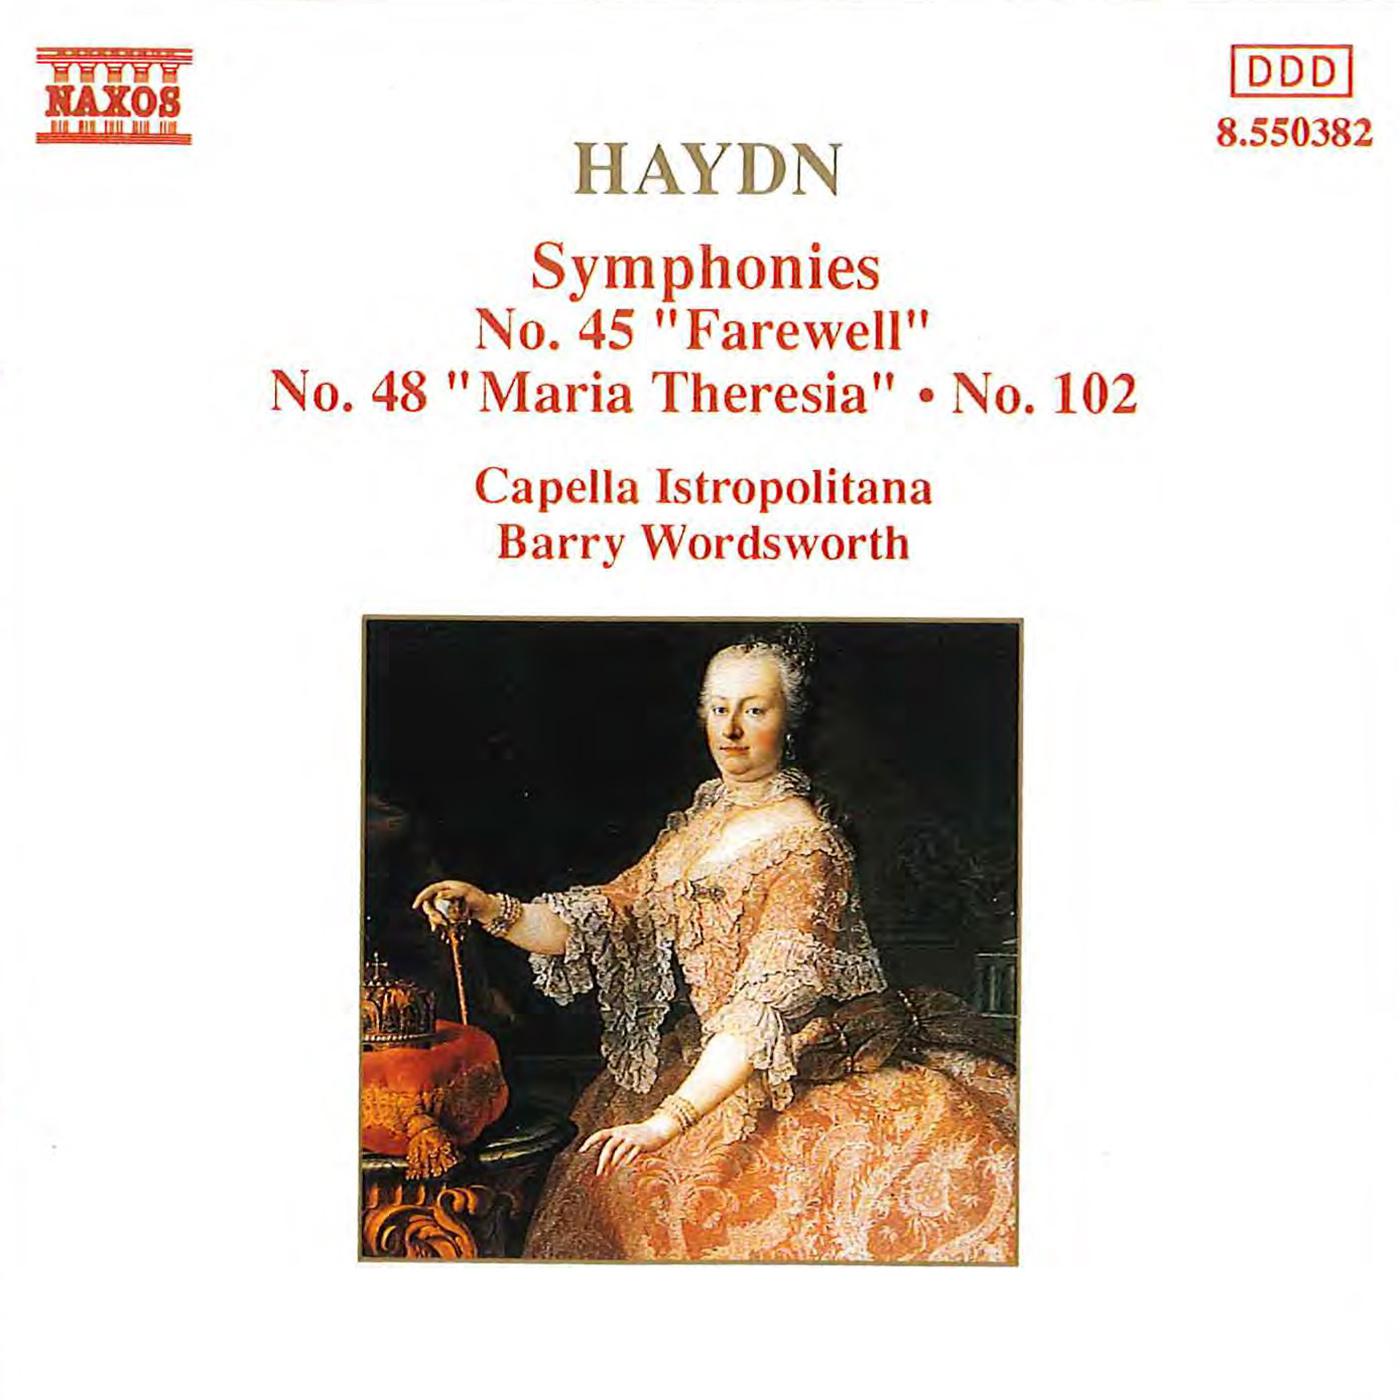 Symphony No. 48 in C Major, Hob.I:48, "Maria Theresa":IV. Finale: Allegro